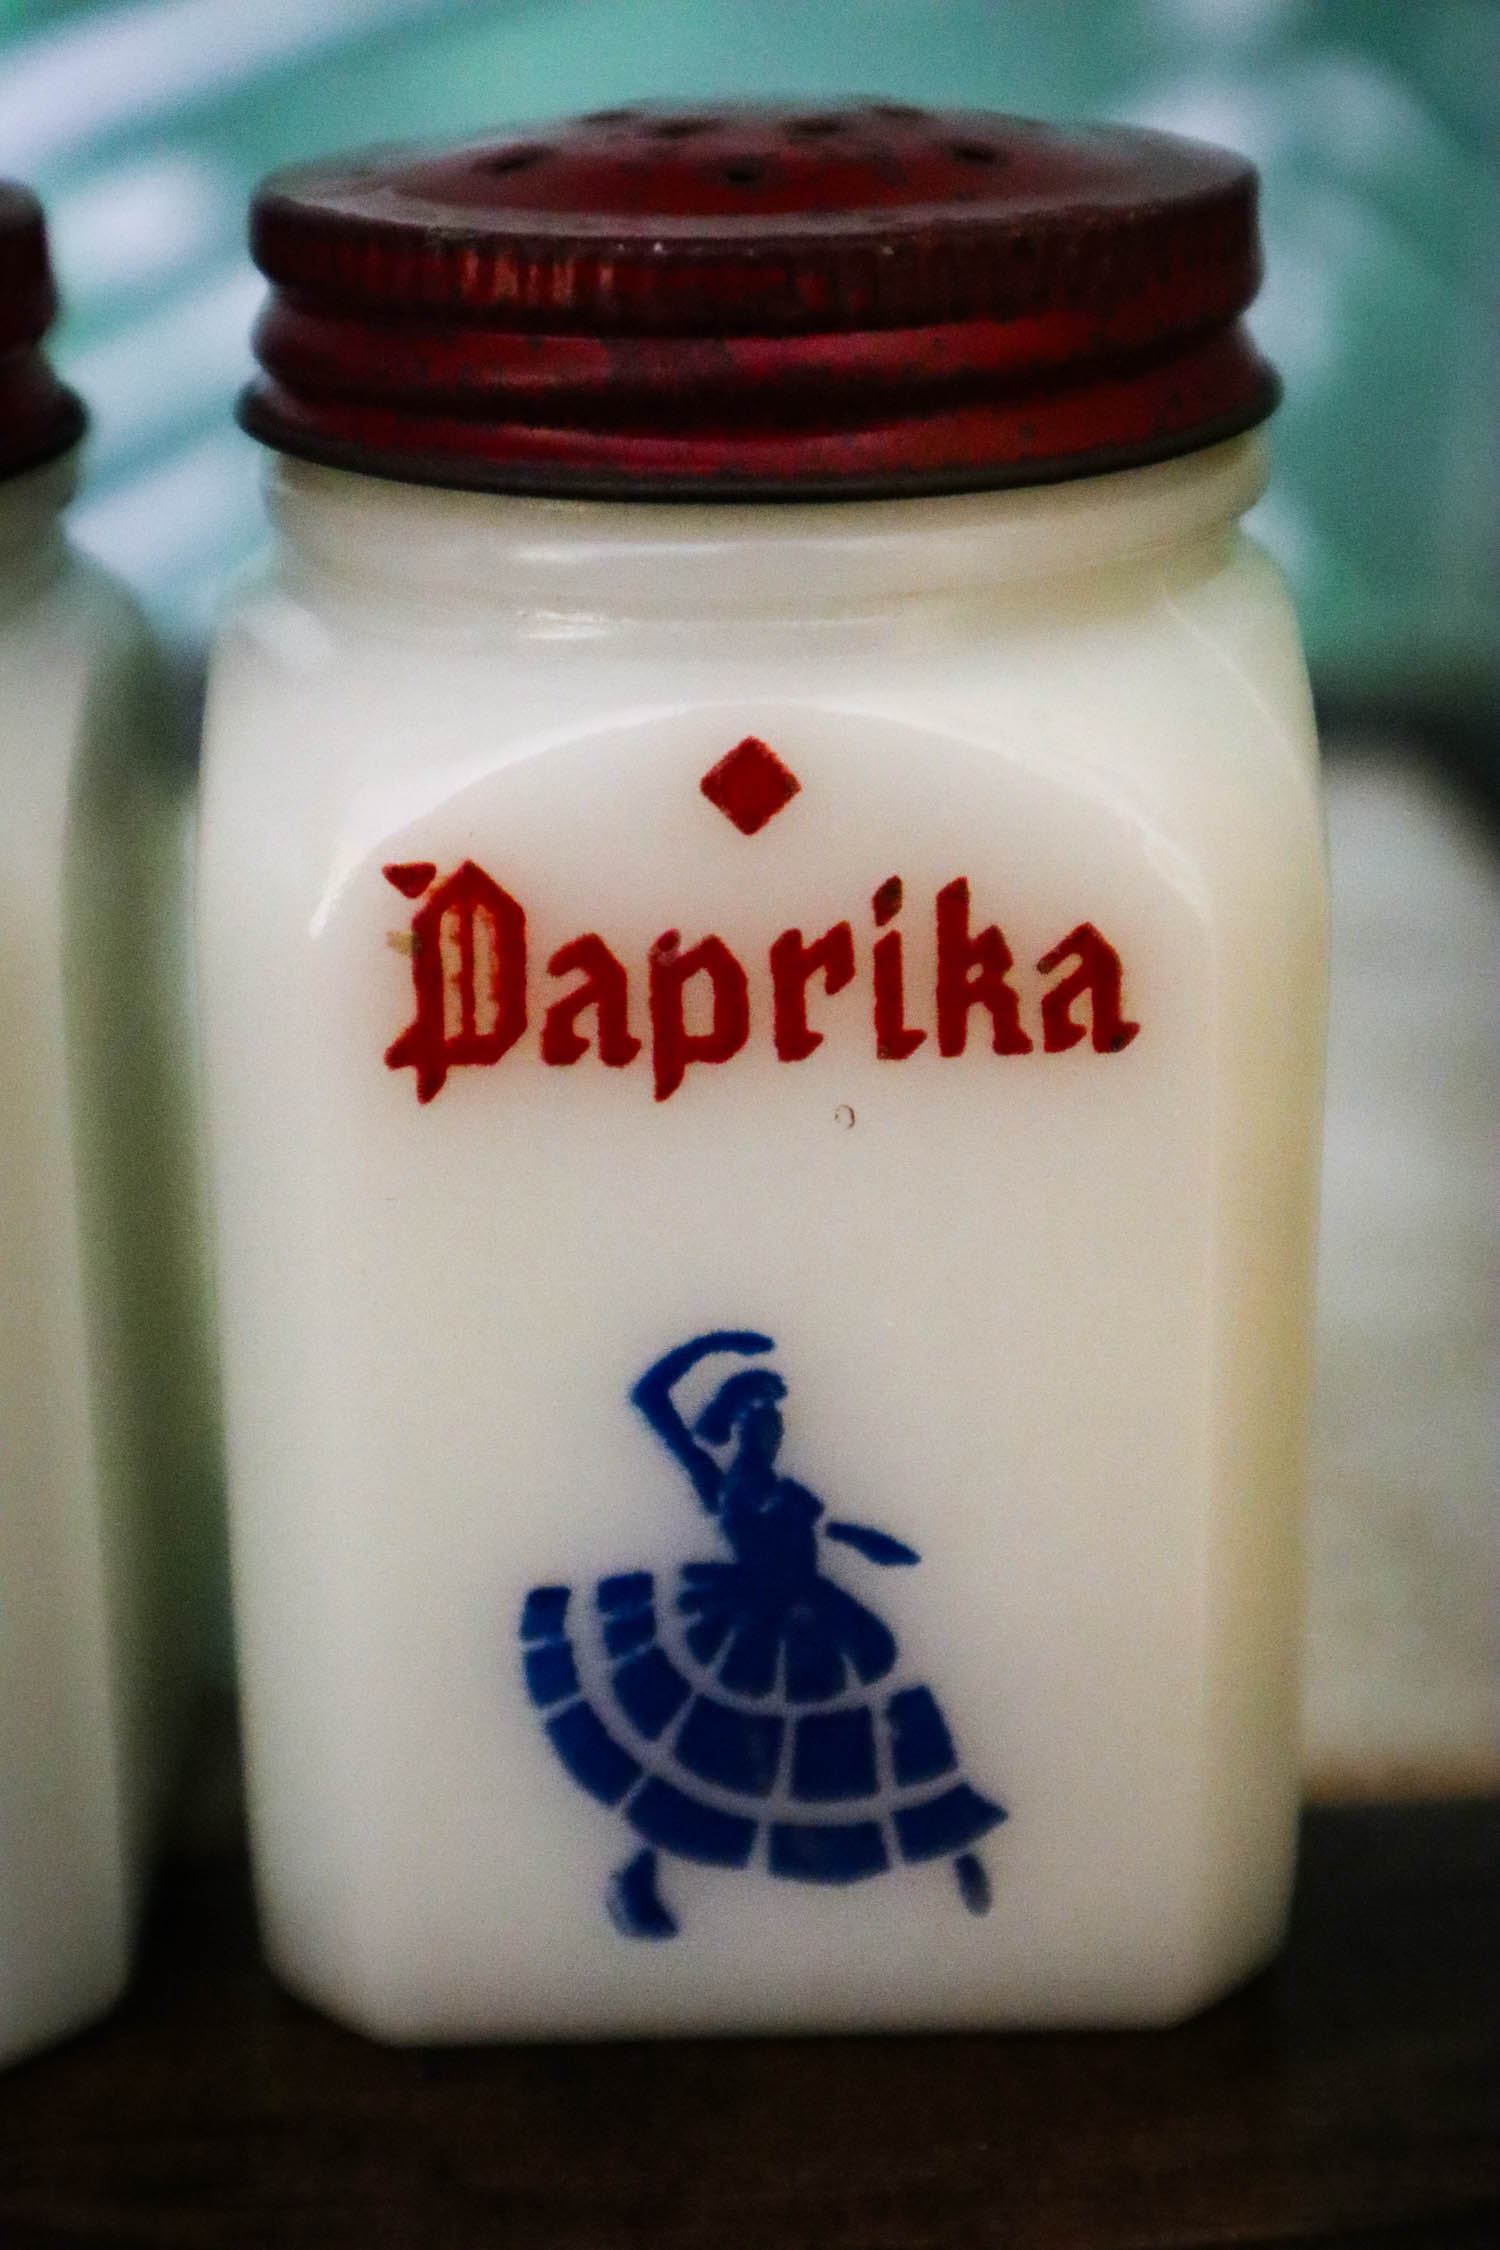 Milk Glass Dutch Spice Shakers Tipp City Hazel Atlas Paprika